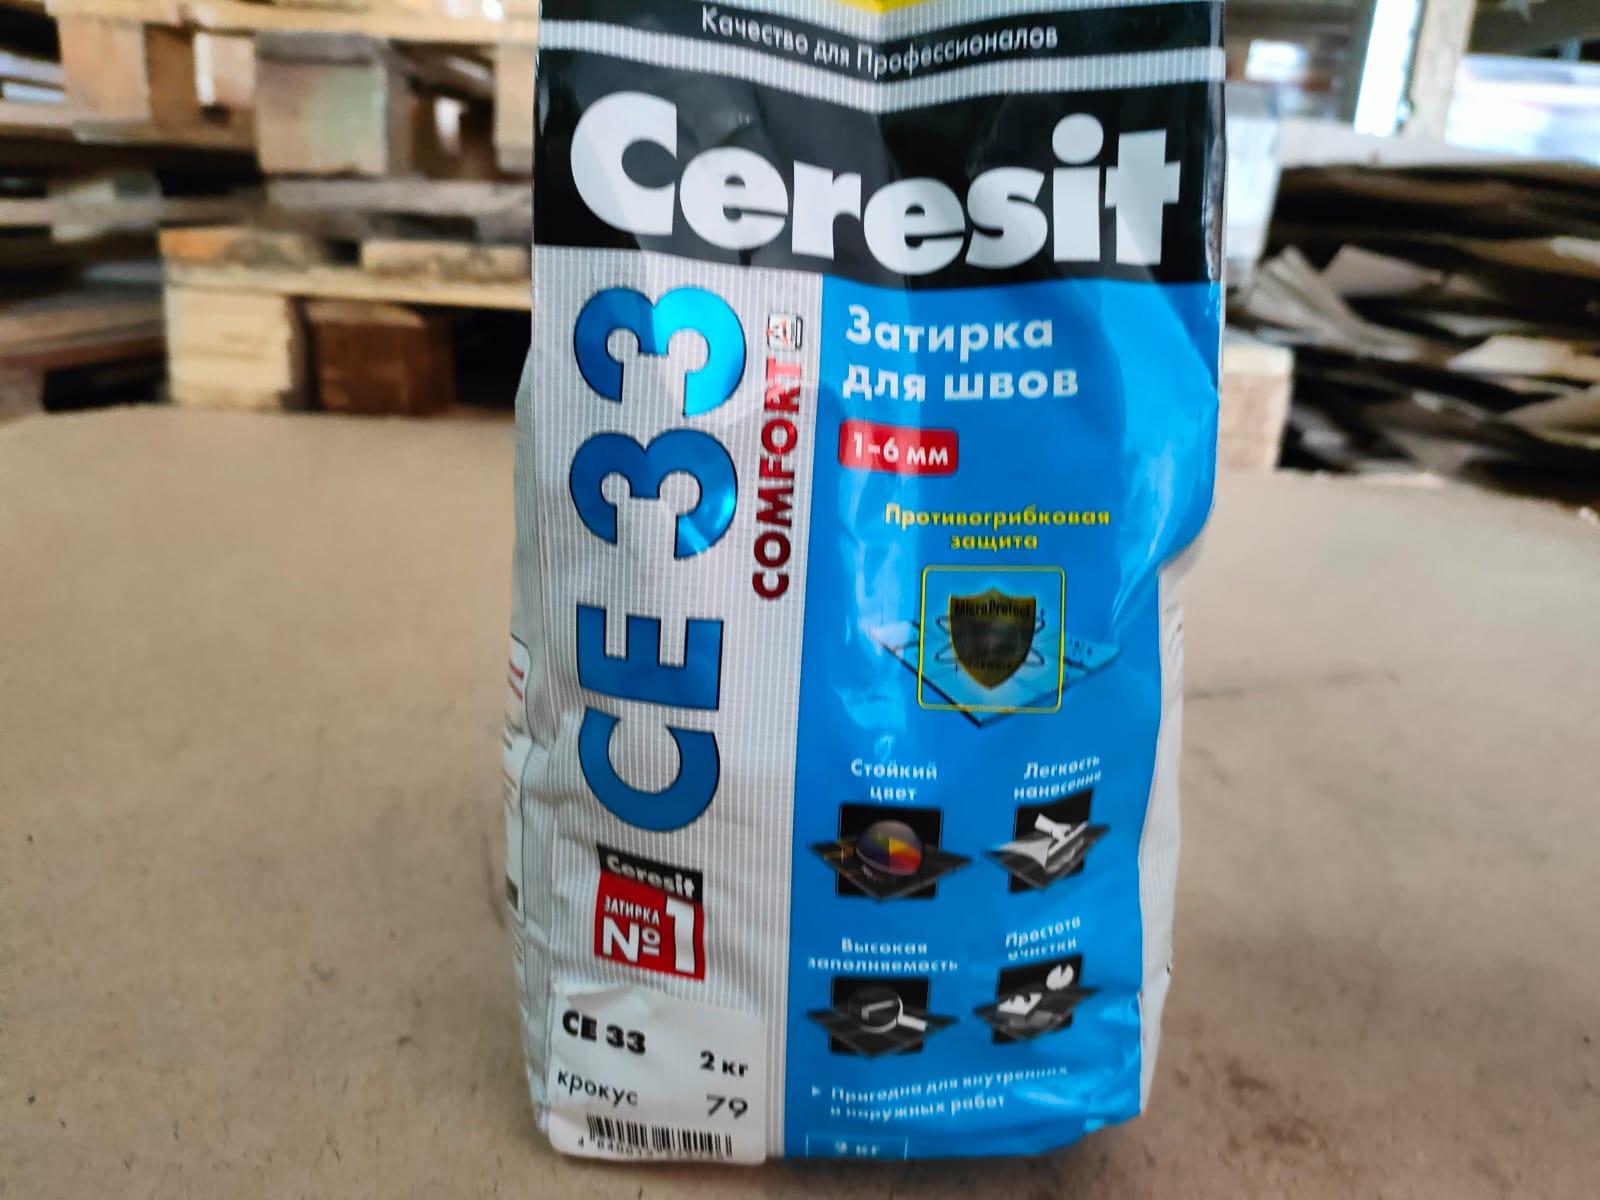 Затирка для узких швов Ceresit CE 33 «Comfort», ширина шва 2-6 мм, 2 кг, цвет крокус ДИСКОНТ